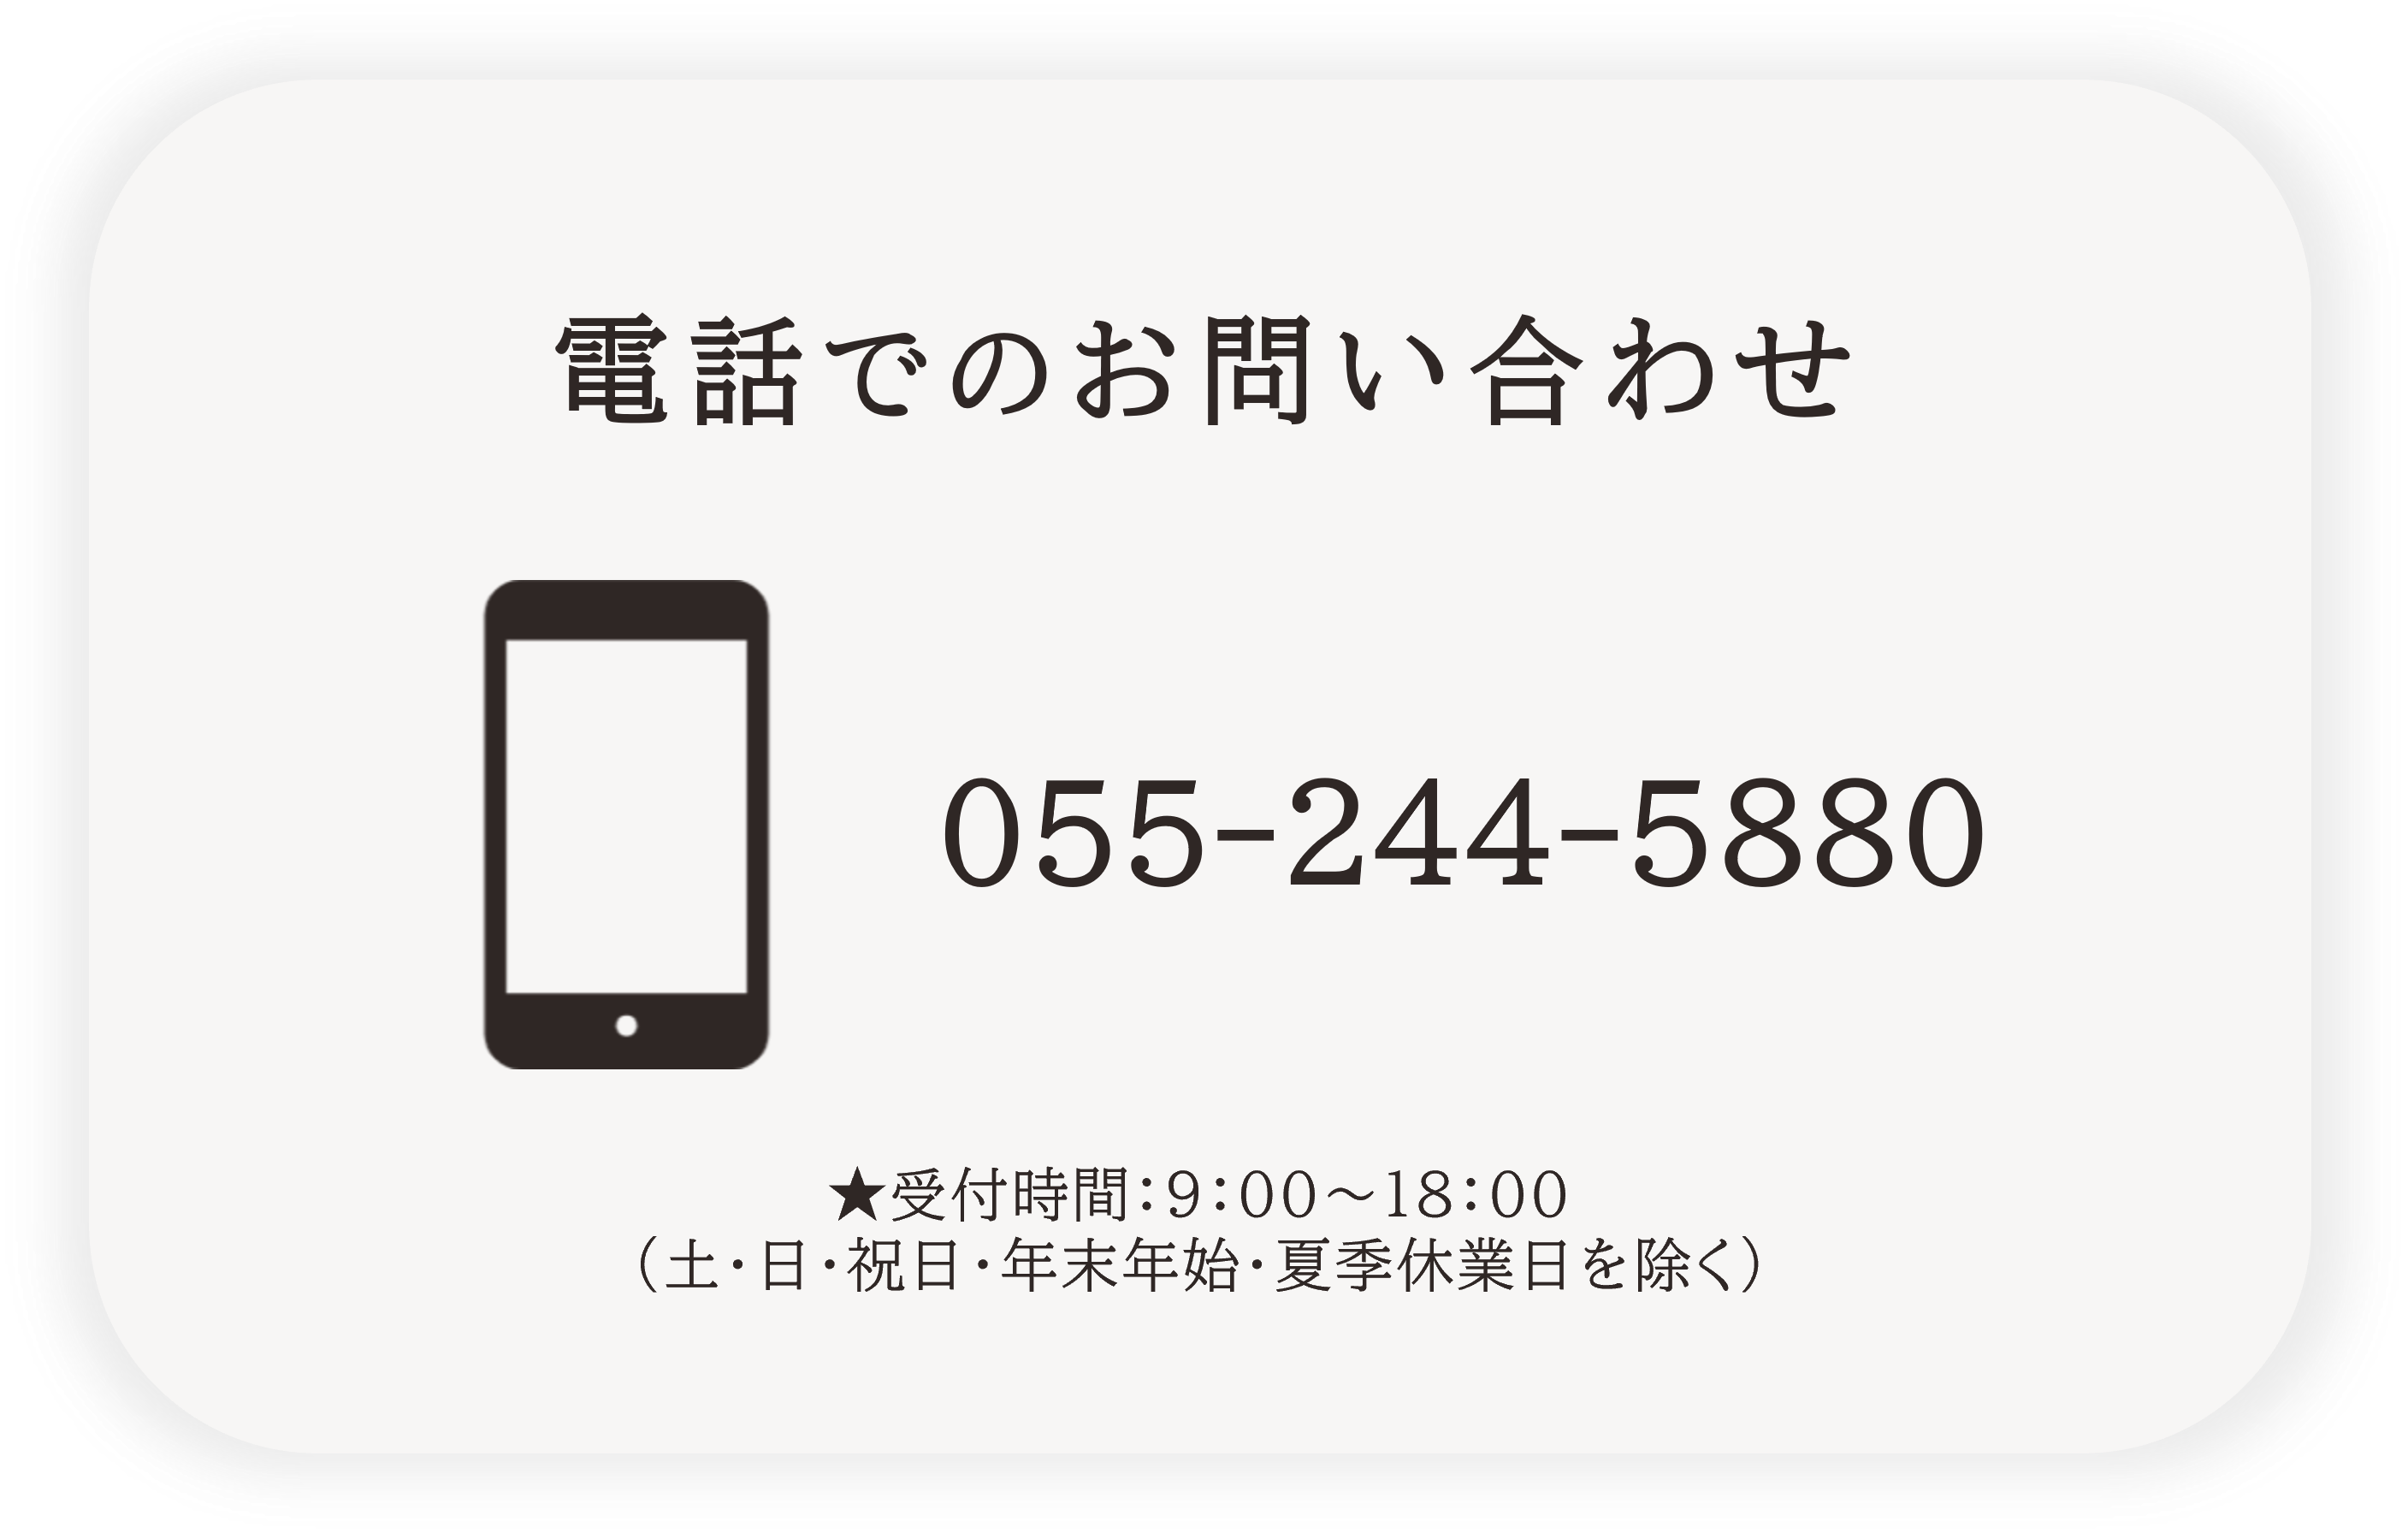 電話問合せ先→055-244-5885